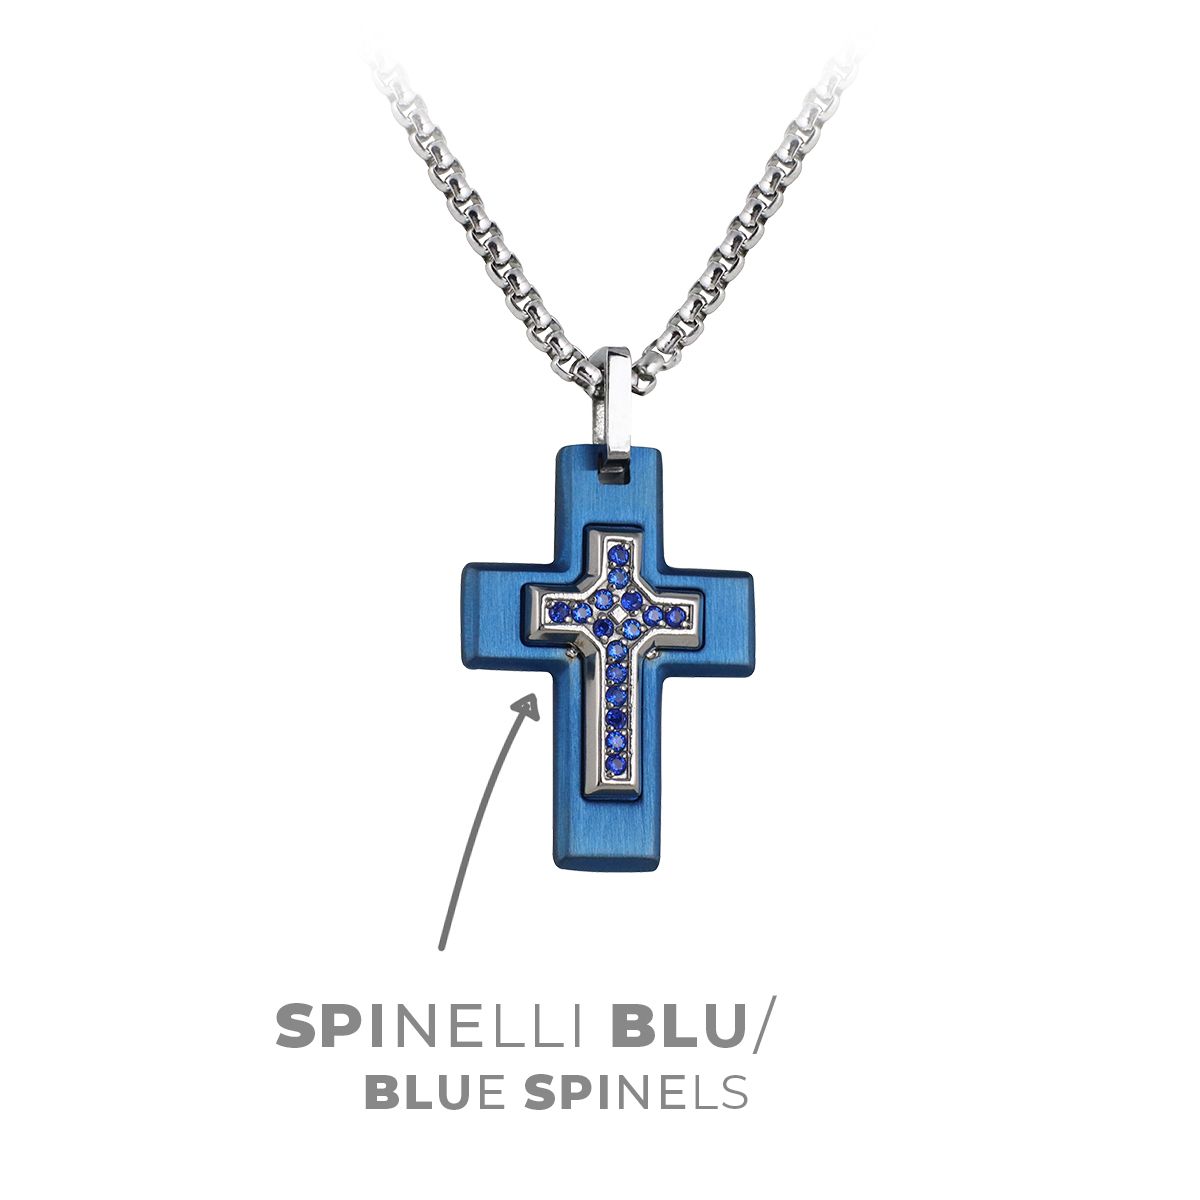 spinelli blu - blue spinels